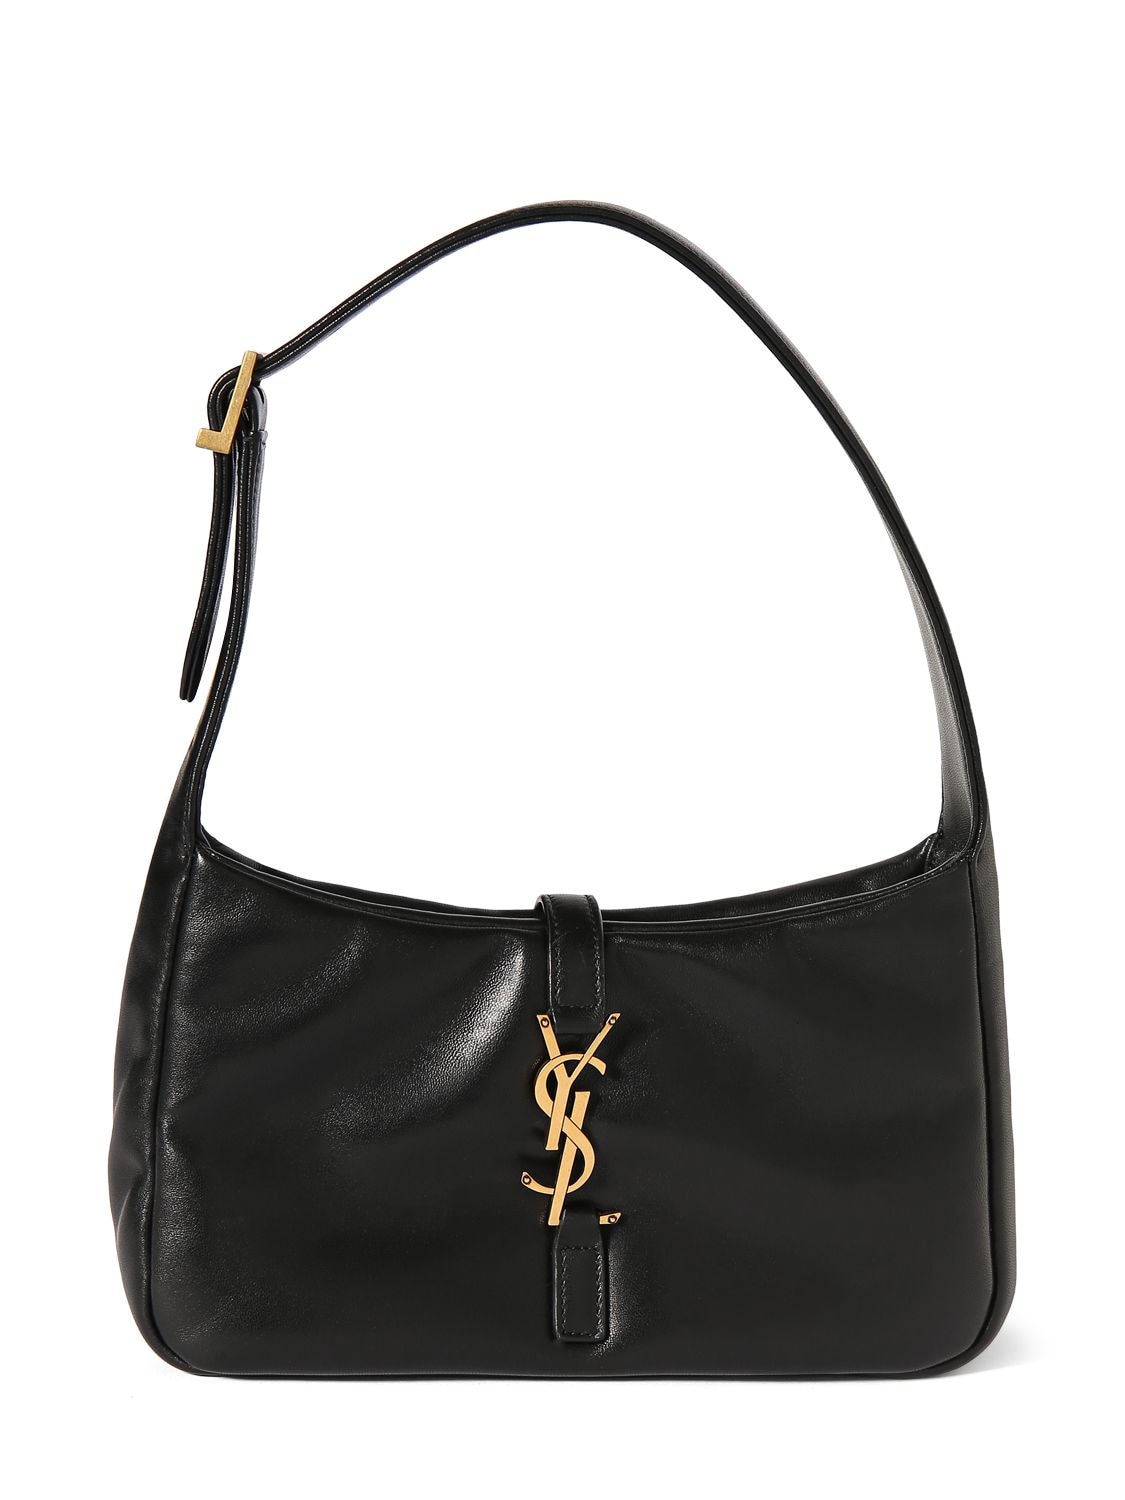 Saint Laurent Le 5A7 YSL Patent Leather Shoulder Bag